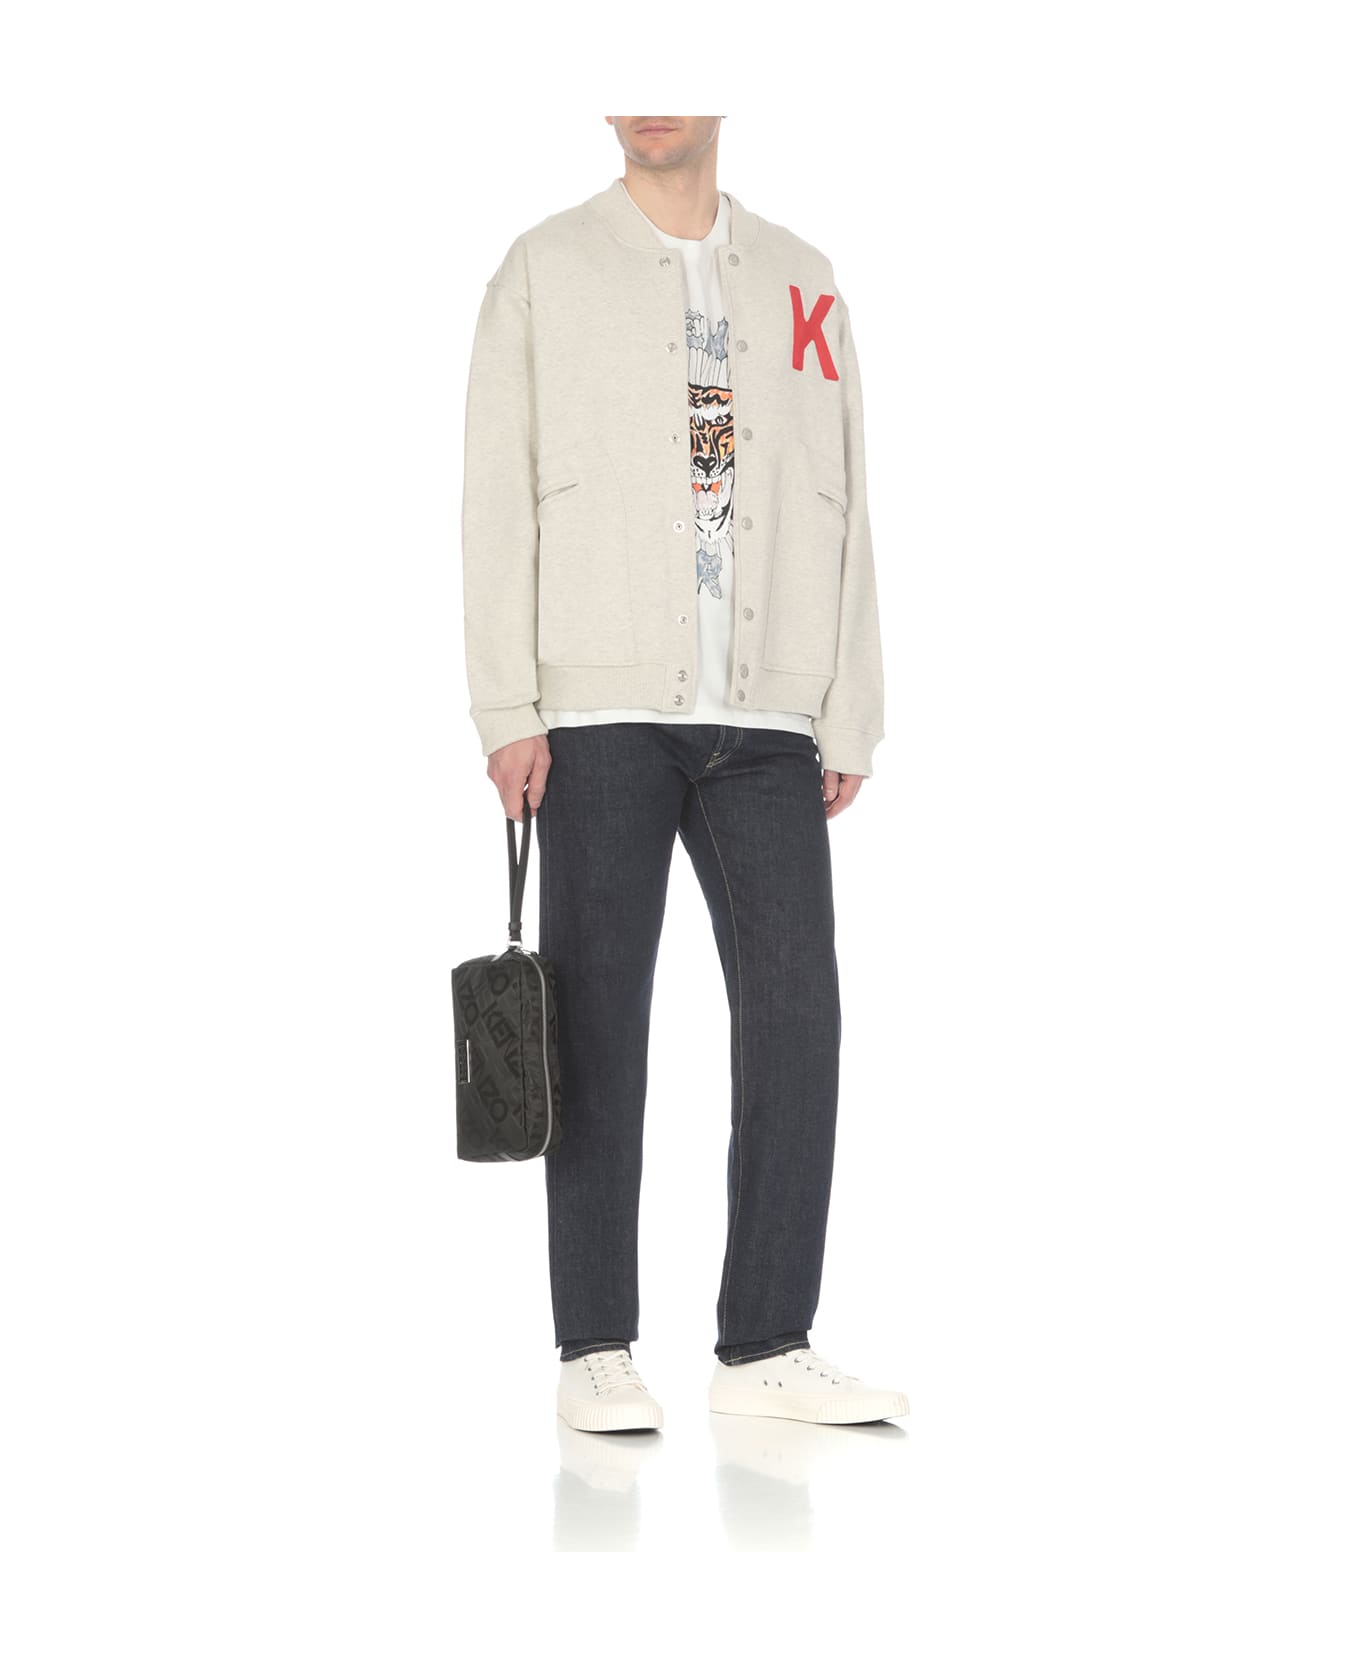 Kenzo Sweatshirt With Embroidery - Grey